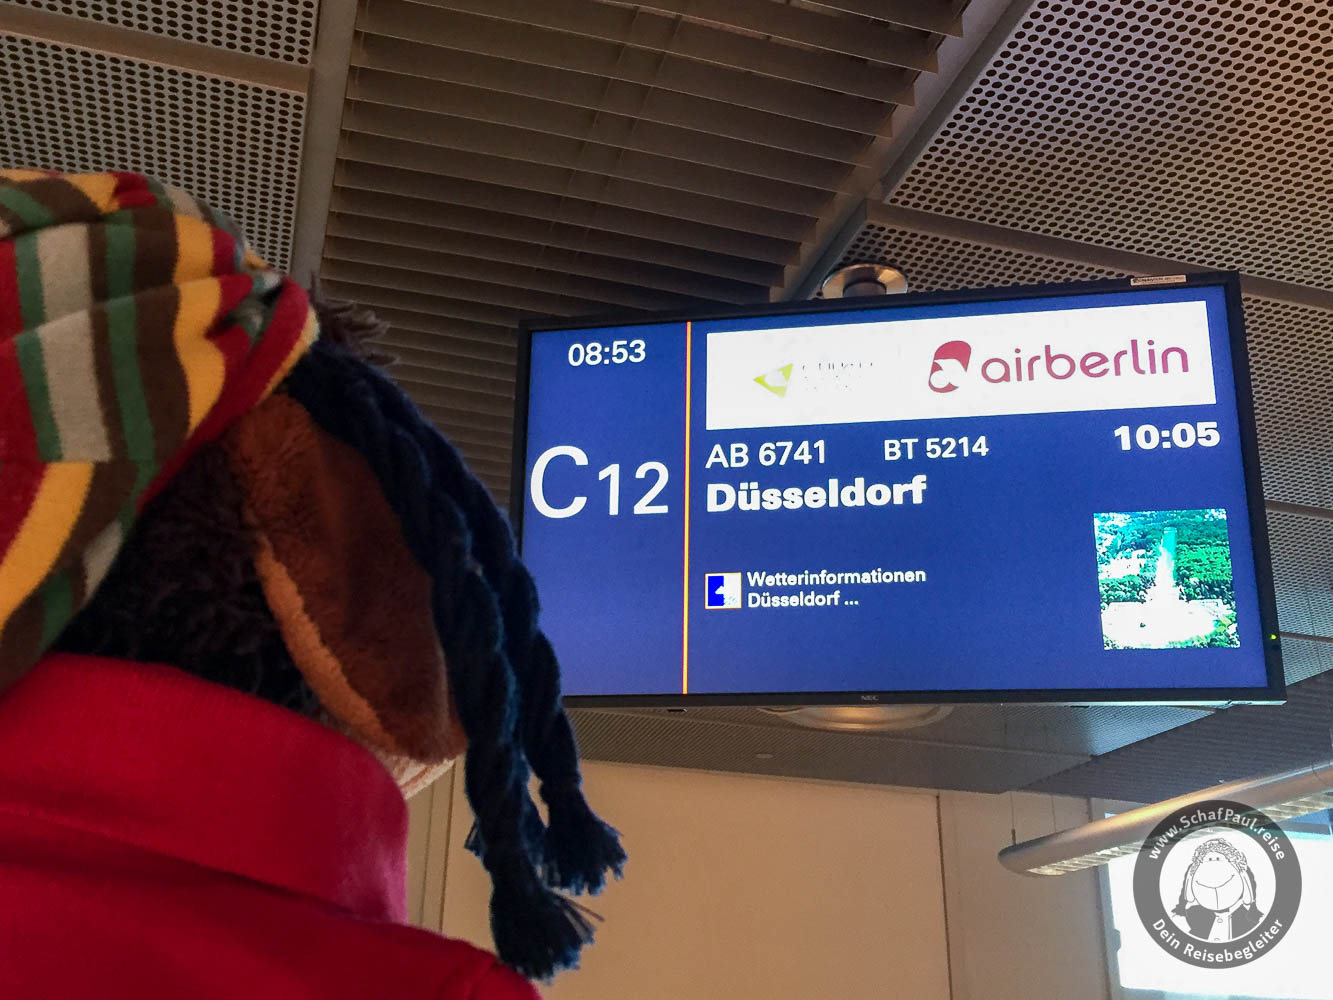 Überraschung: Es geht mit Air Berlin nach Düsseldorf!